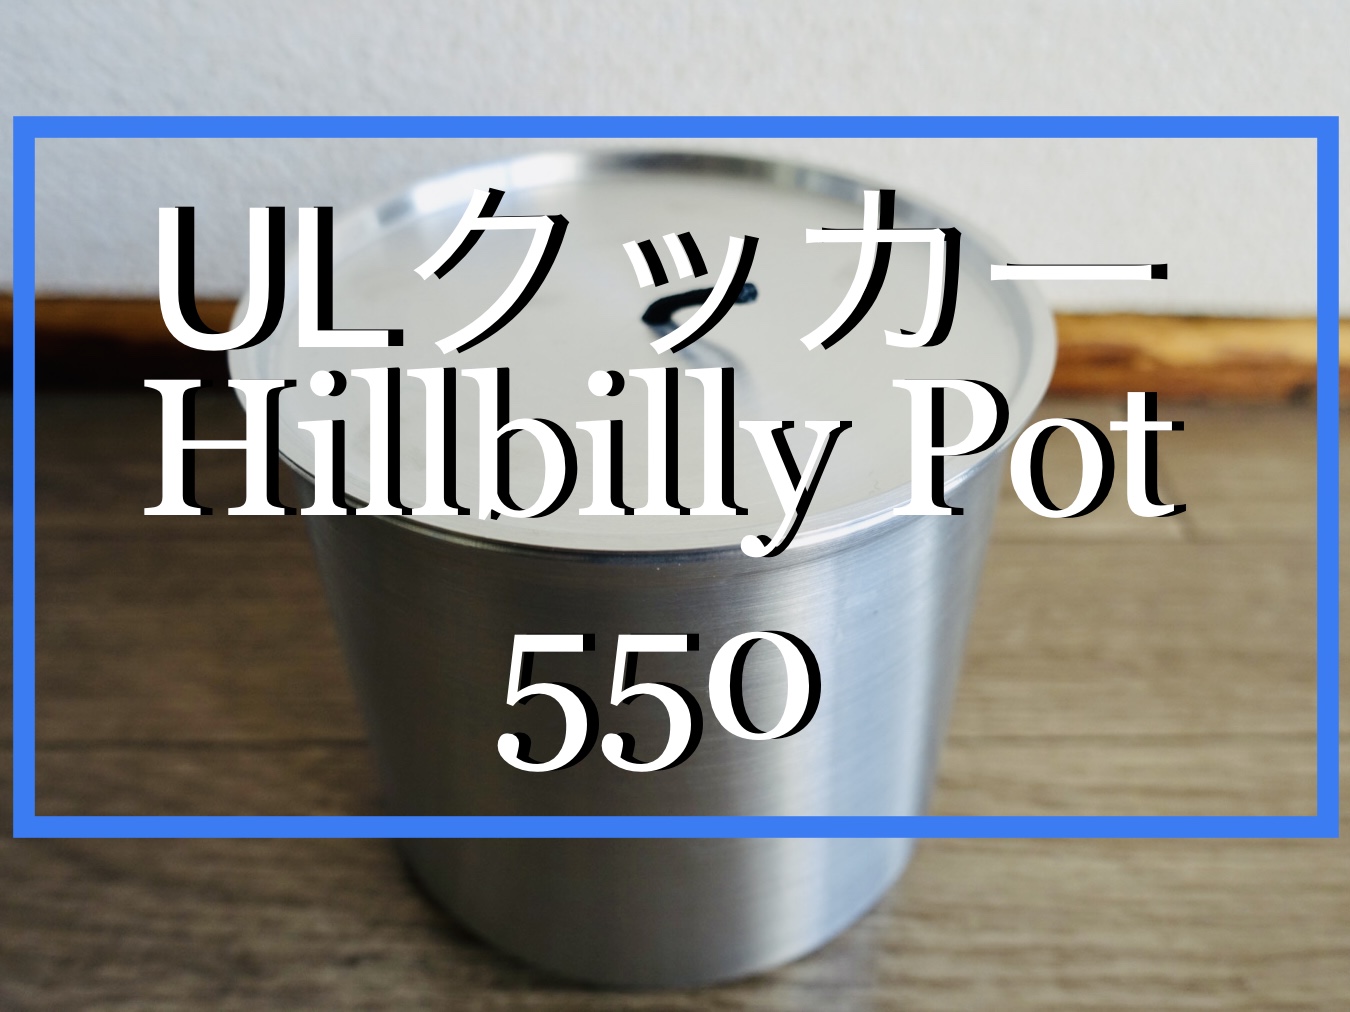 ギアレビュー]UL感がバシバシ来る！Hillbilly Pot 550 - 軽旅 カルタビ